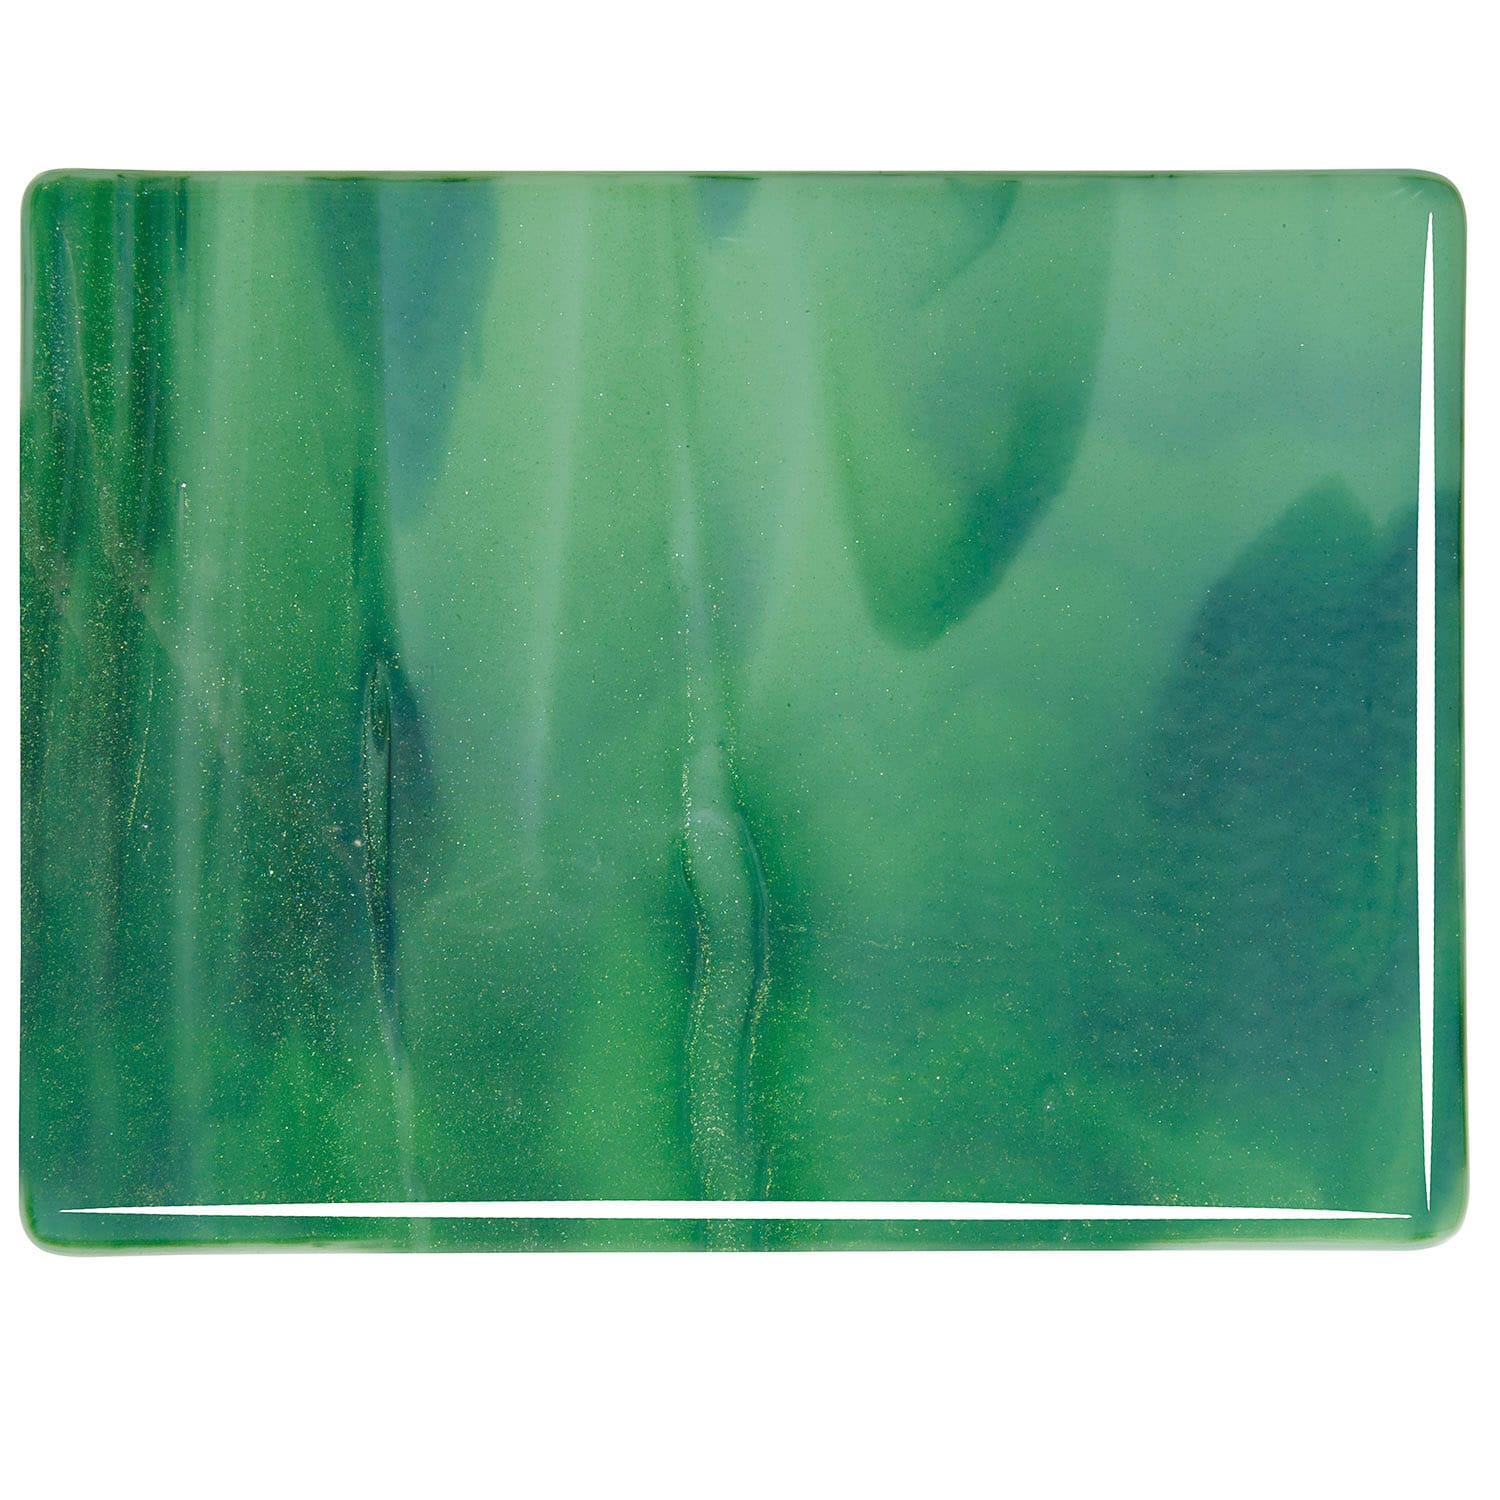 Bullseye COE90 Fusing Glass 002112 Mint Opalescent, Deep Forest Green Handy Sheet